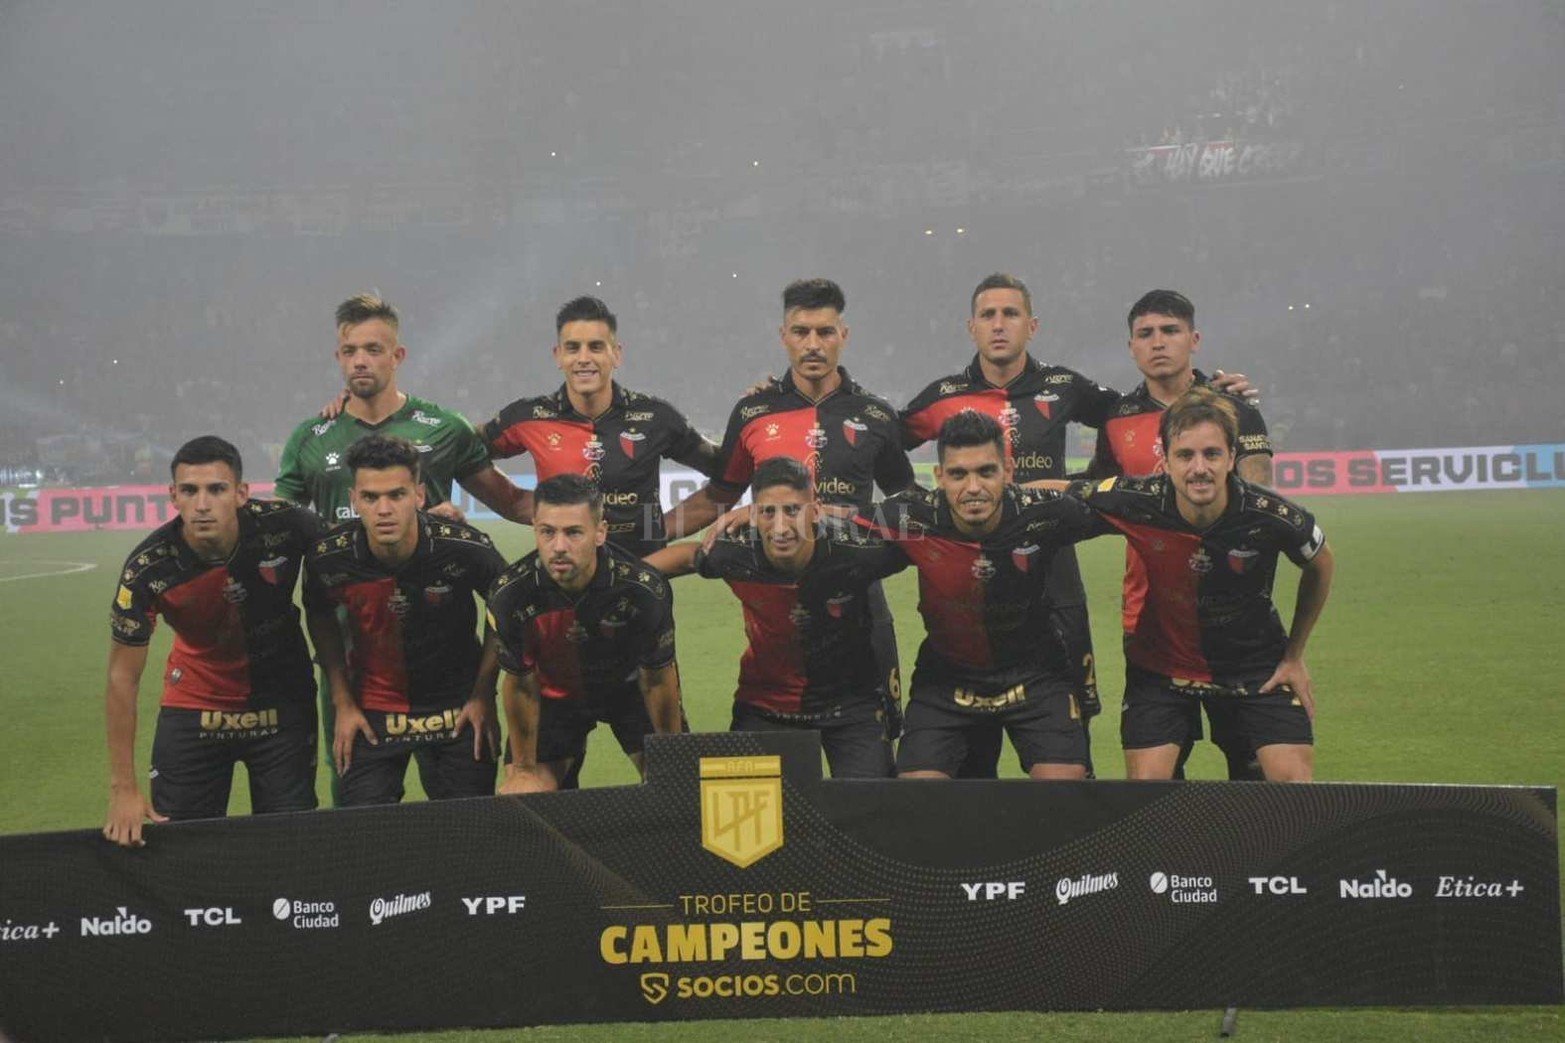 Colón escribe historia en el fútbol profesional de primera división. En Santiago del Estero, juega la final con River para definir el Trofeo del Campeón 2021. Puede hoy sumar su segunda estrella.